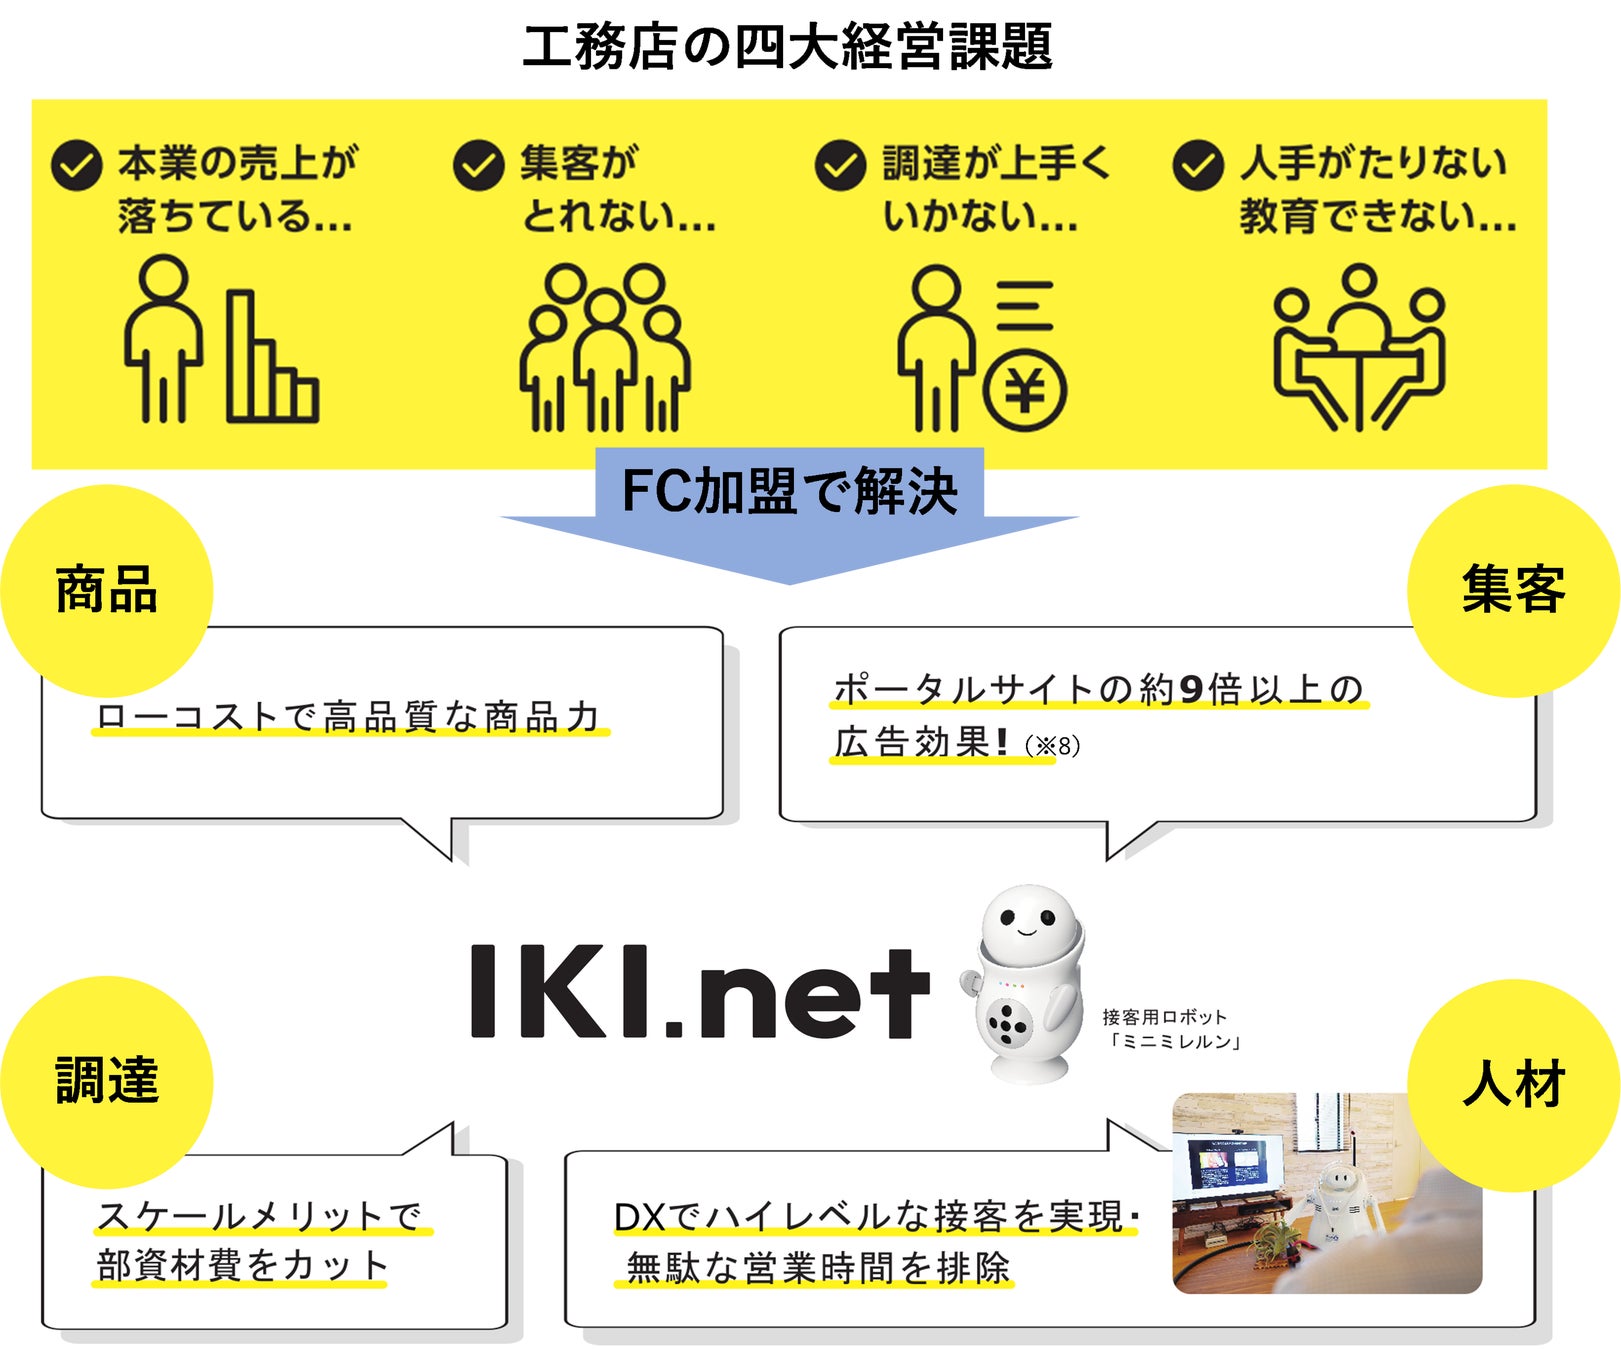 ローコスト平屋注文住宅FC「IKI.net」本格始動商品・集客・調達・人材の四大経営課題を解決のサブ画像4